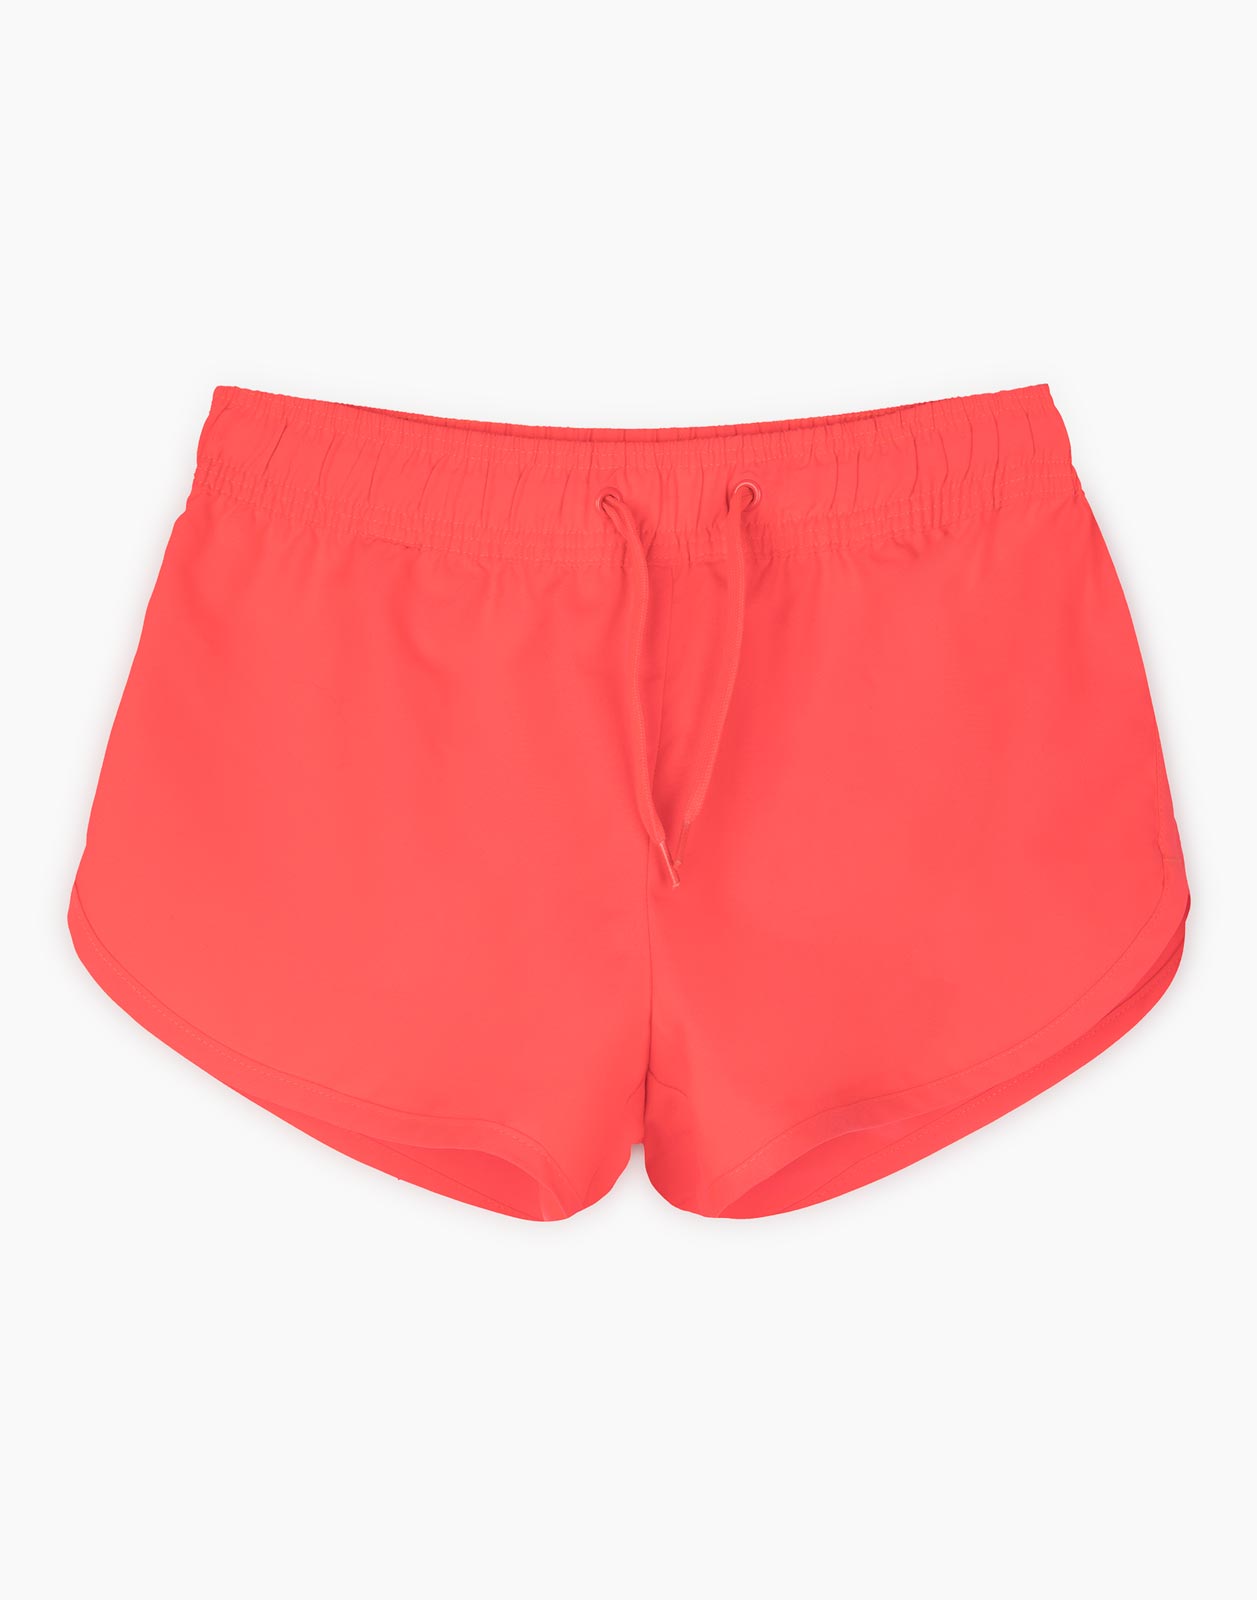 Коралловые пляжные шорты для девочки р.158-164